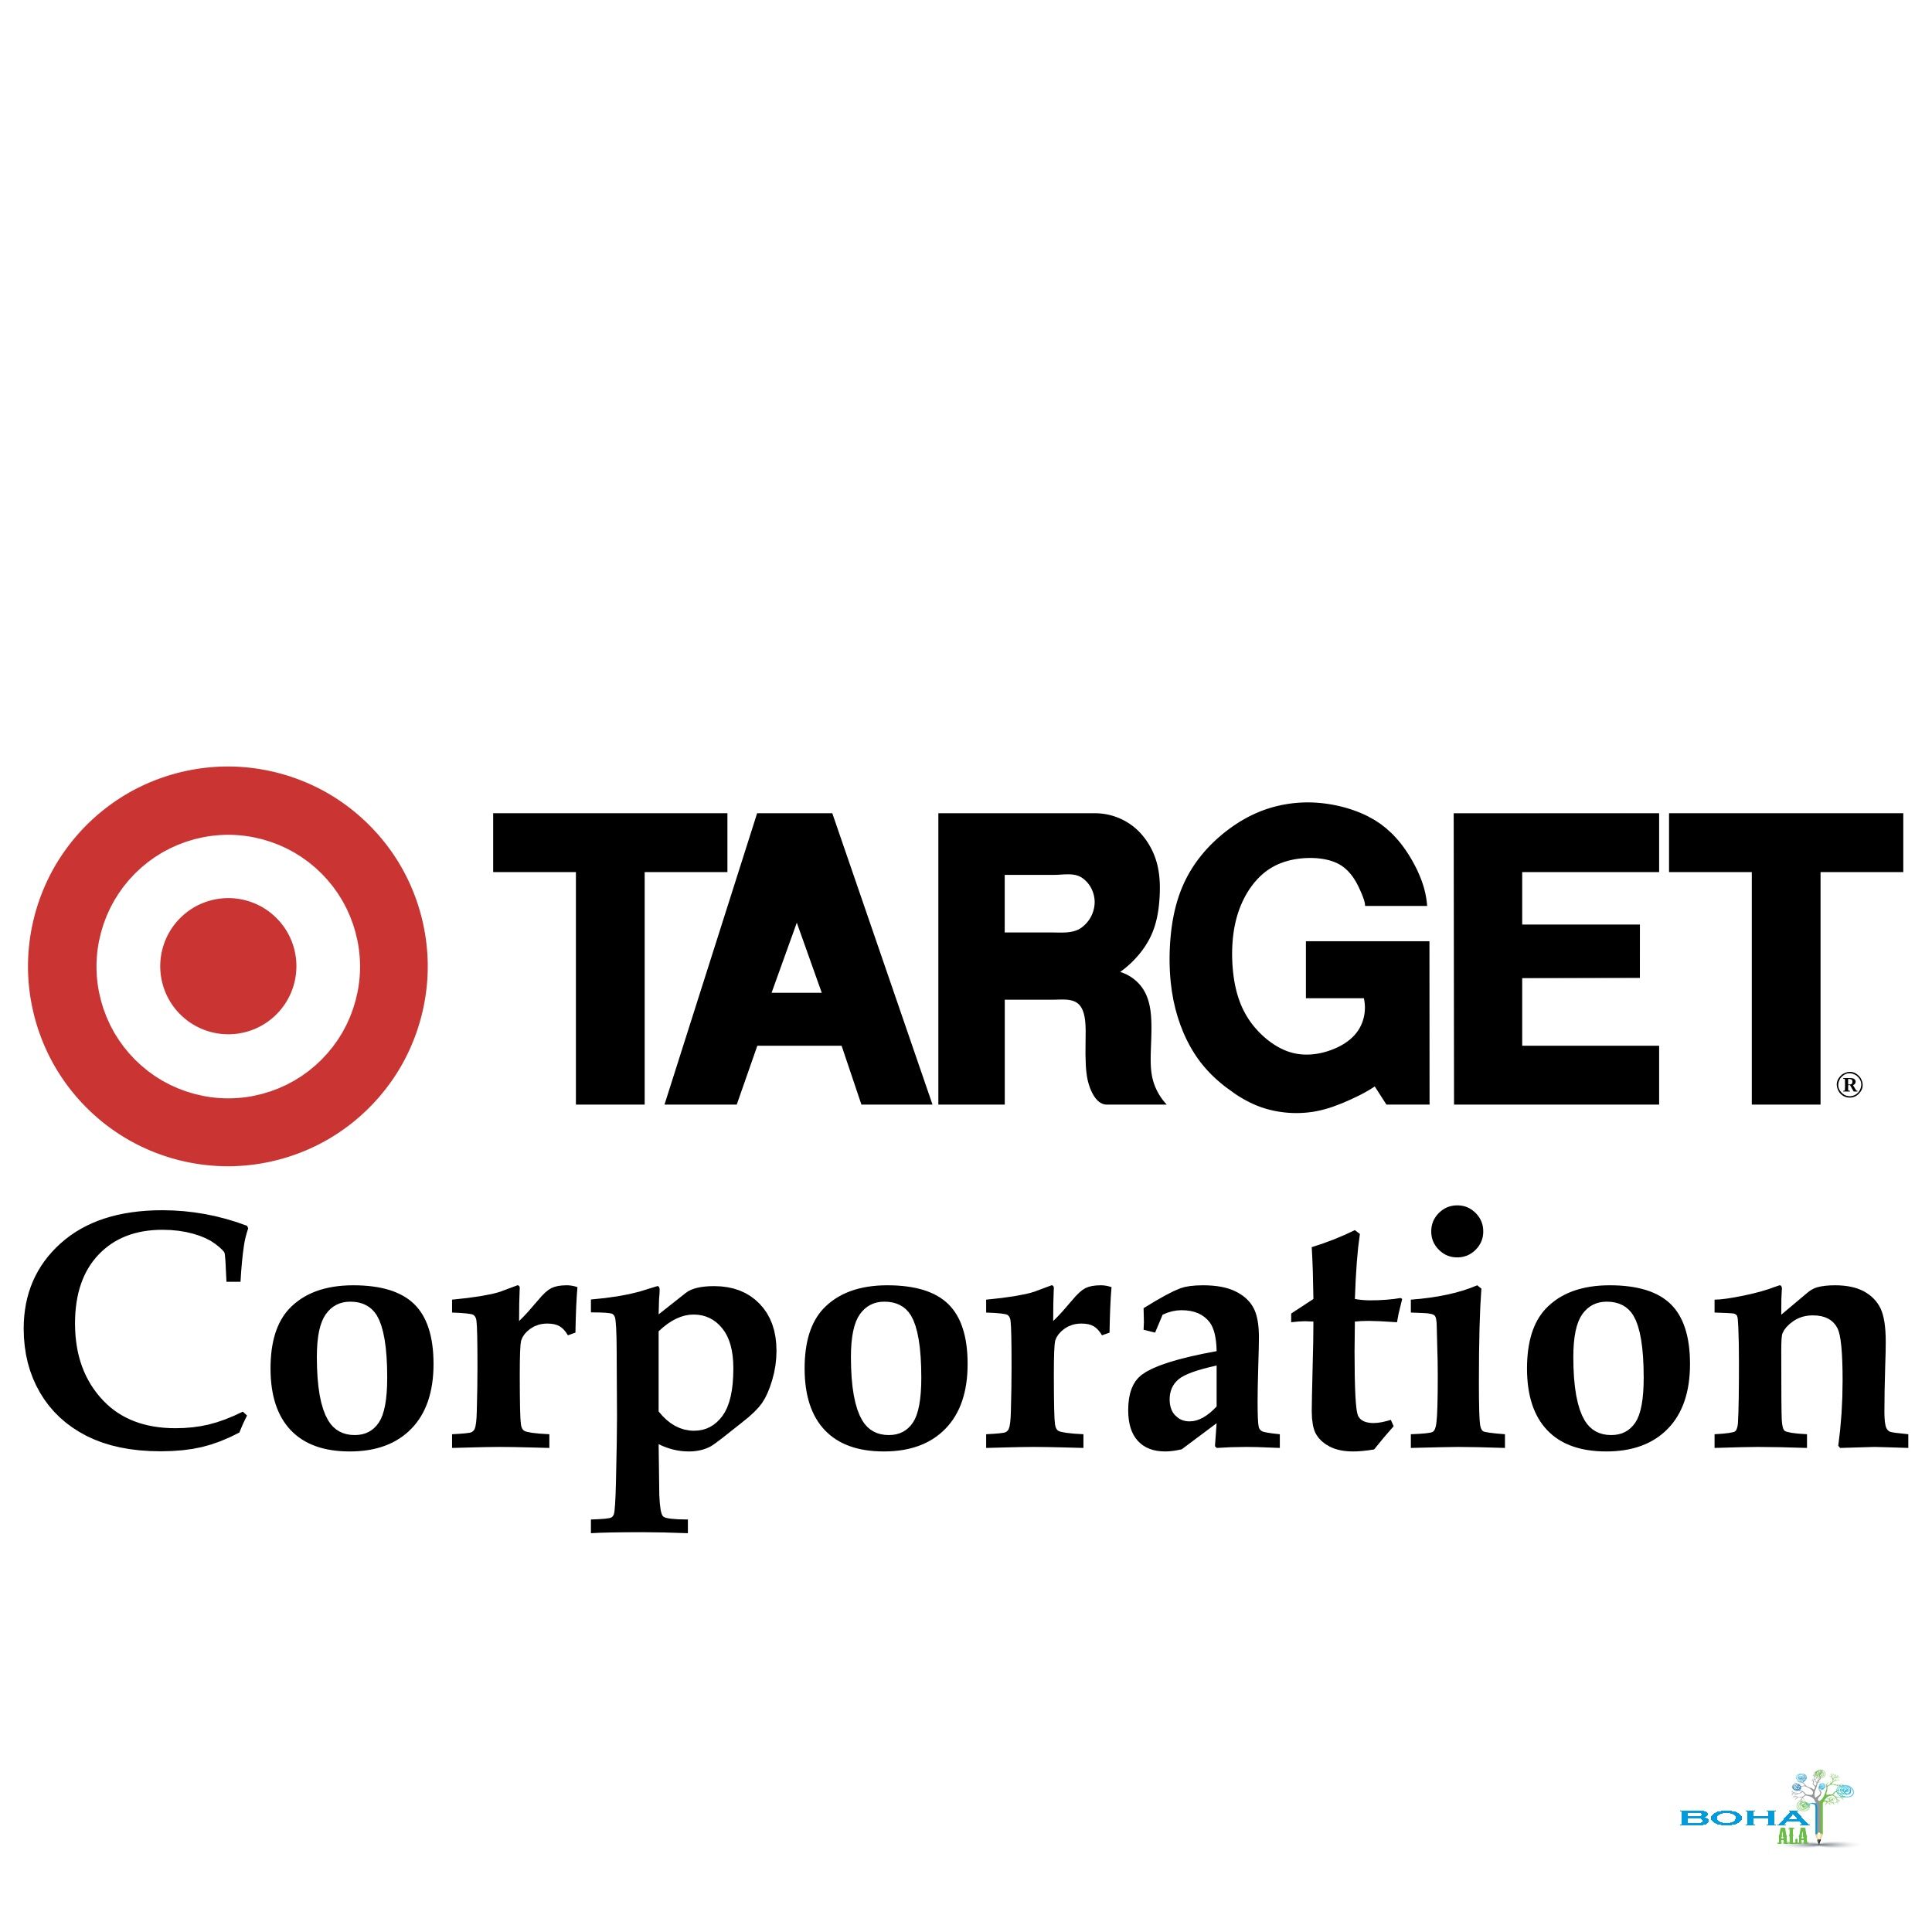 Target Corporation Organization Culture